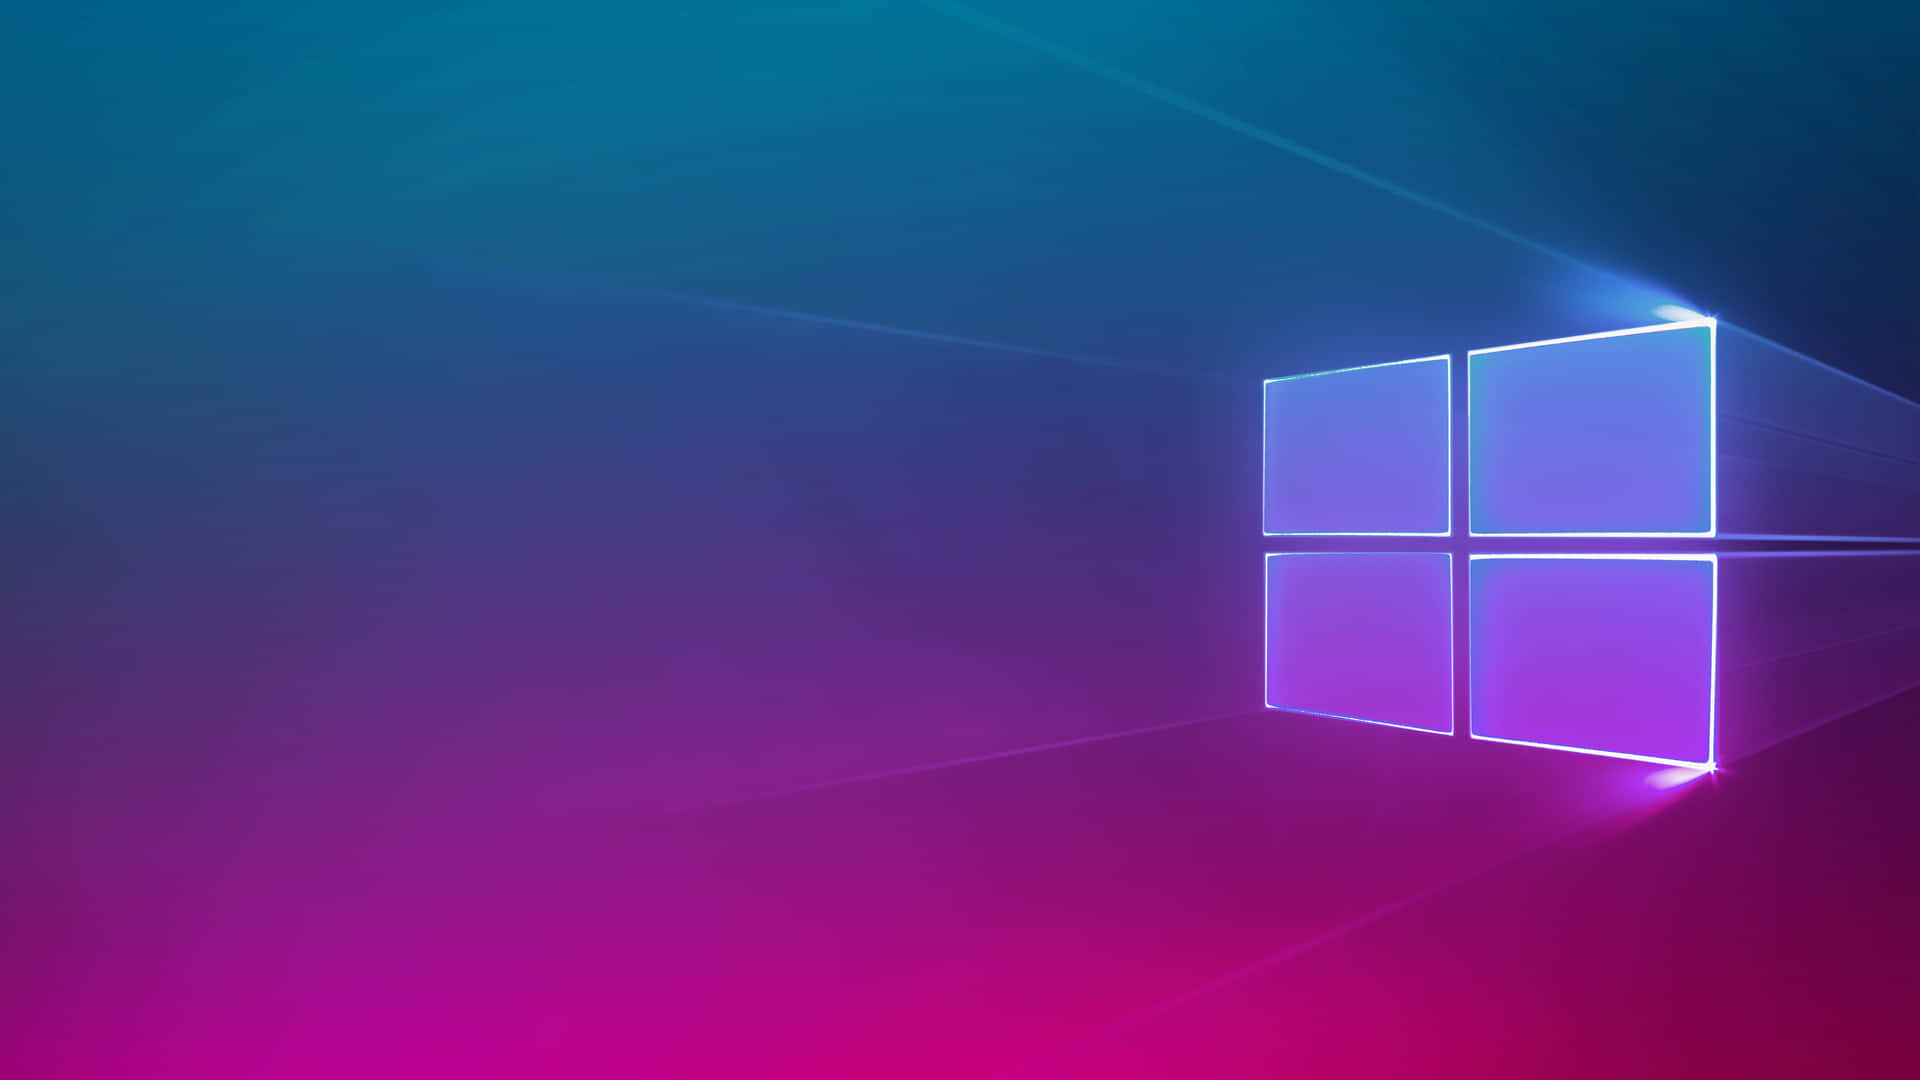 Windows10 Hintergrundbilder In Hd-qualität. Wallpaper